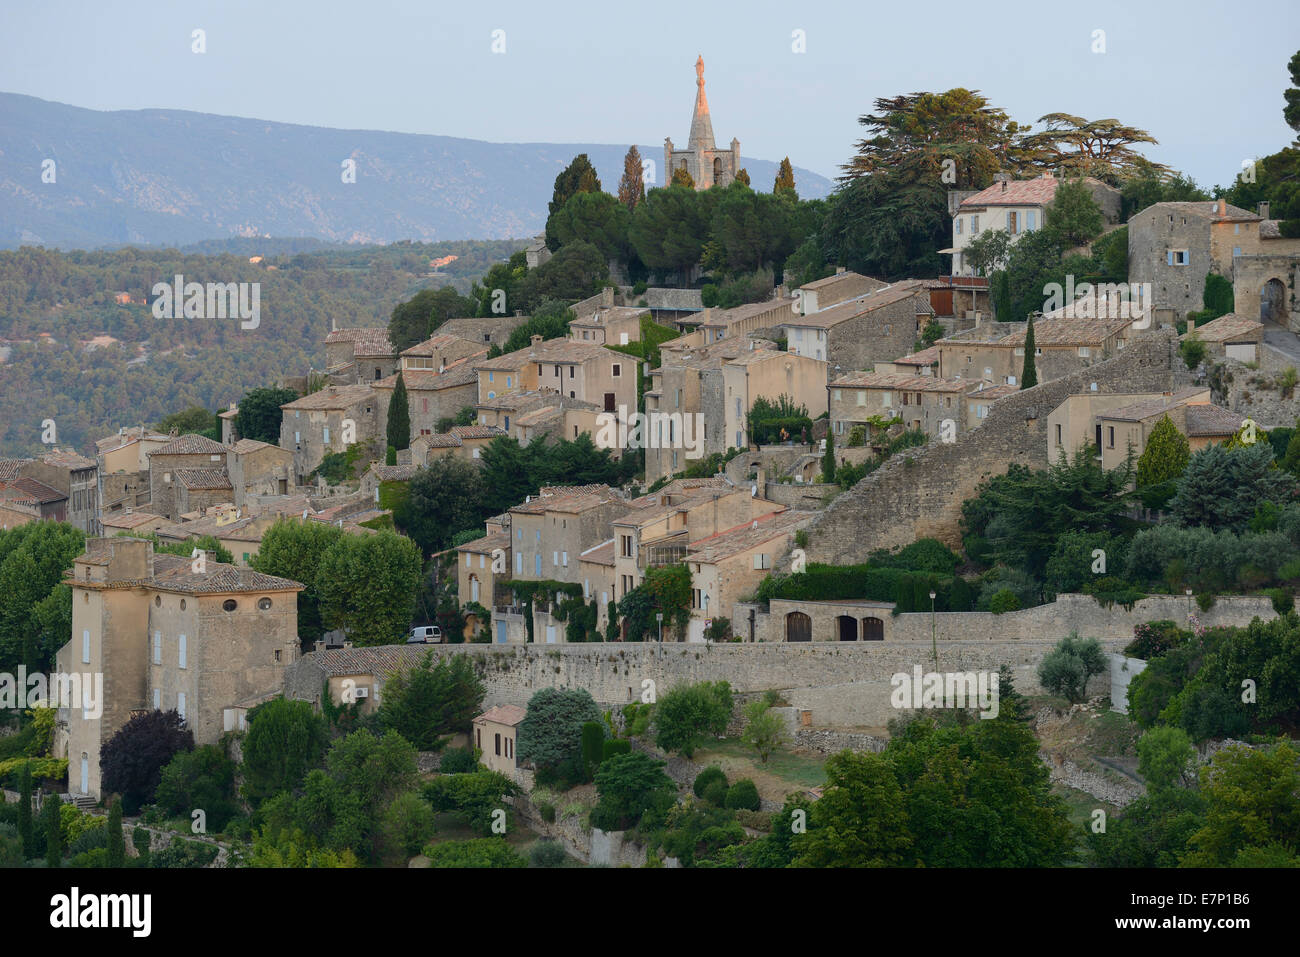 Europe, France, Provence-Alpes-Côte d'Azur, Provence, Vaucluse, department, Bonnieux, town, village, Stock Photo